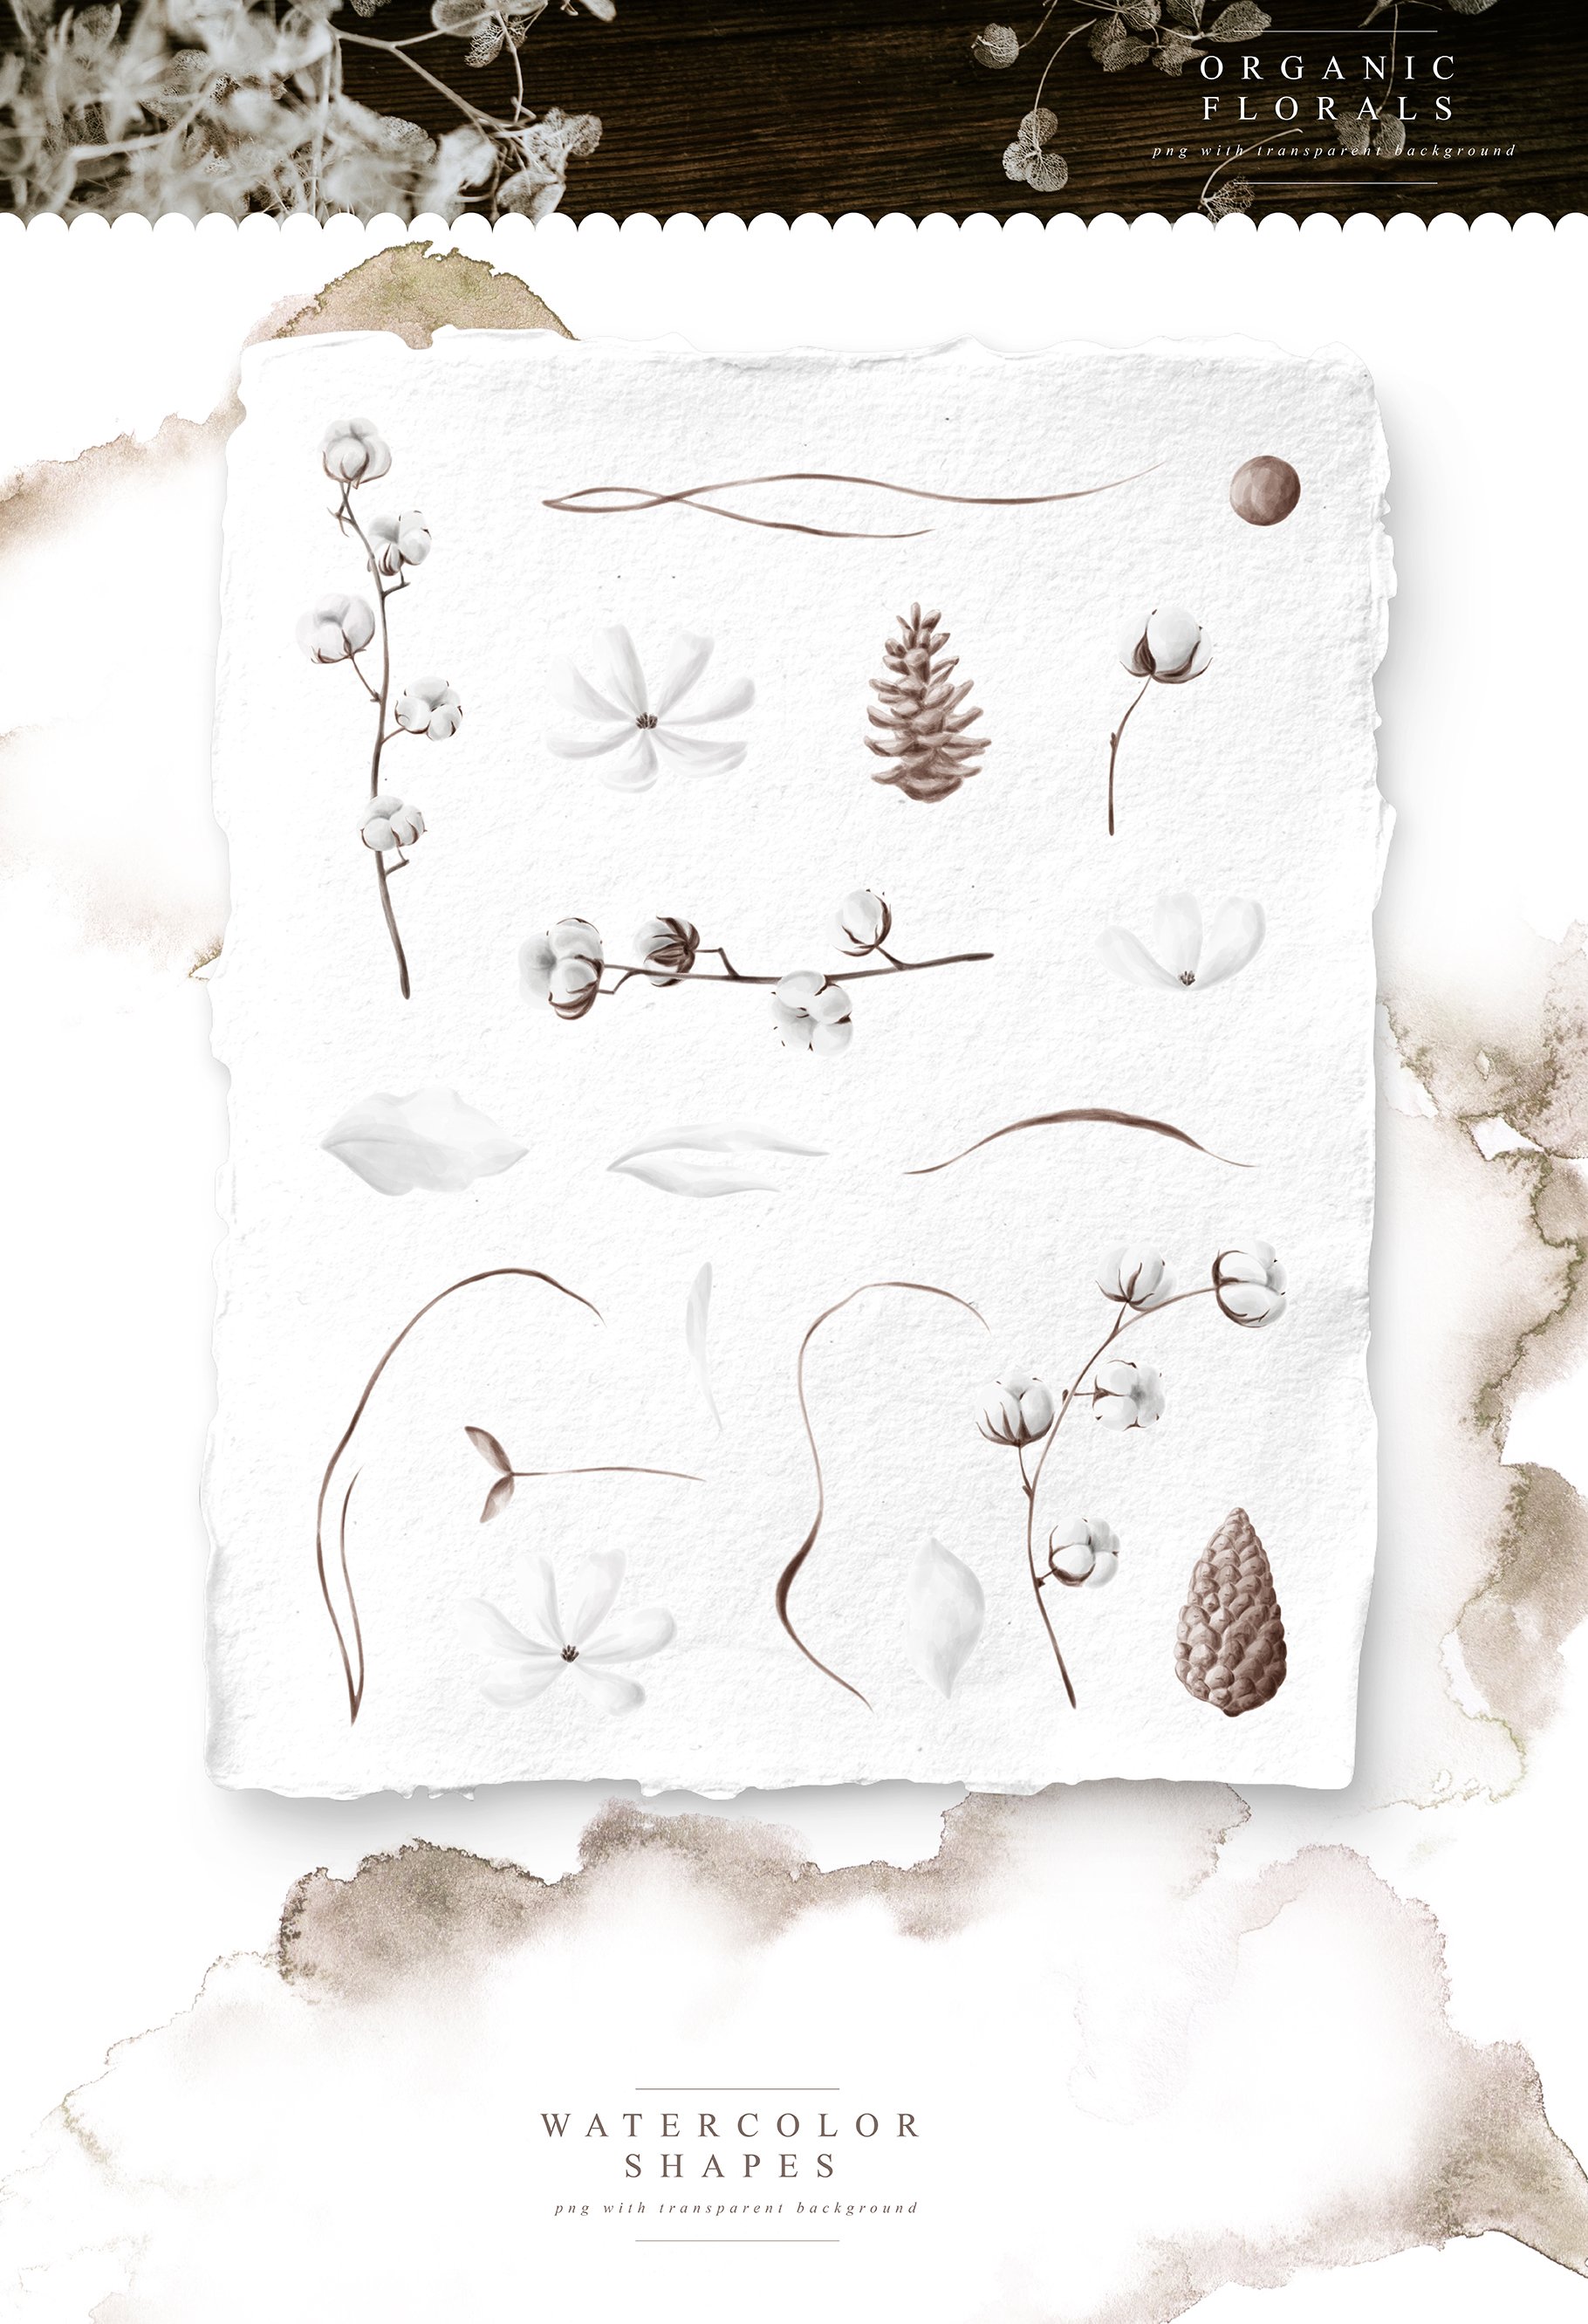 全套女性婚礼品牌元素手绘花卉植物纹理图案素材合集包 Tren